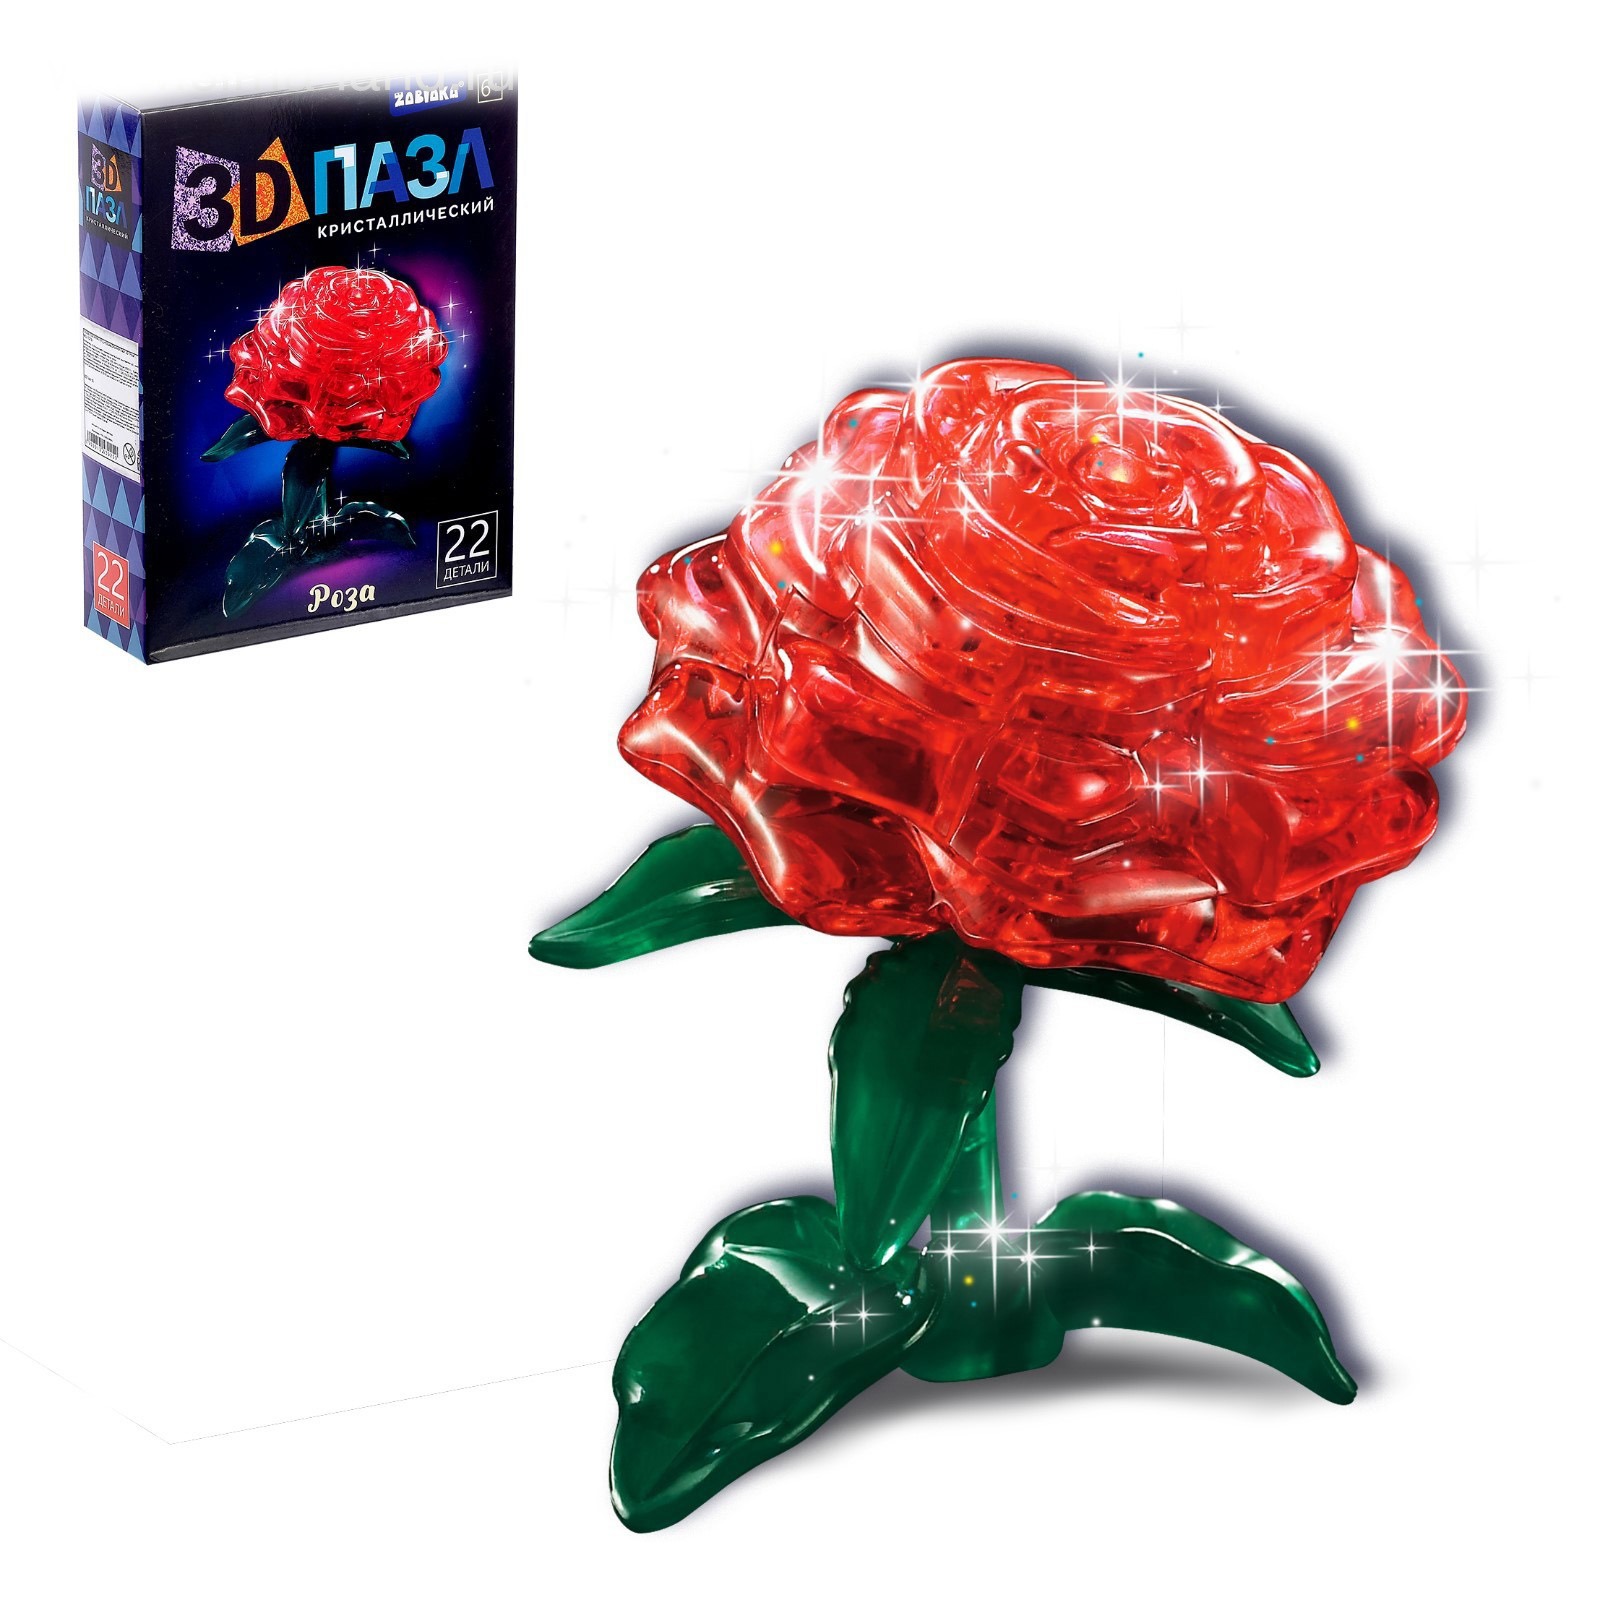 Пазл Забияка 3D кристаллический Роза, 22 детали, световые эффекты в ассортименте 1353925